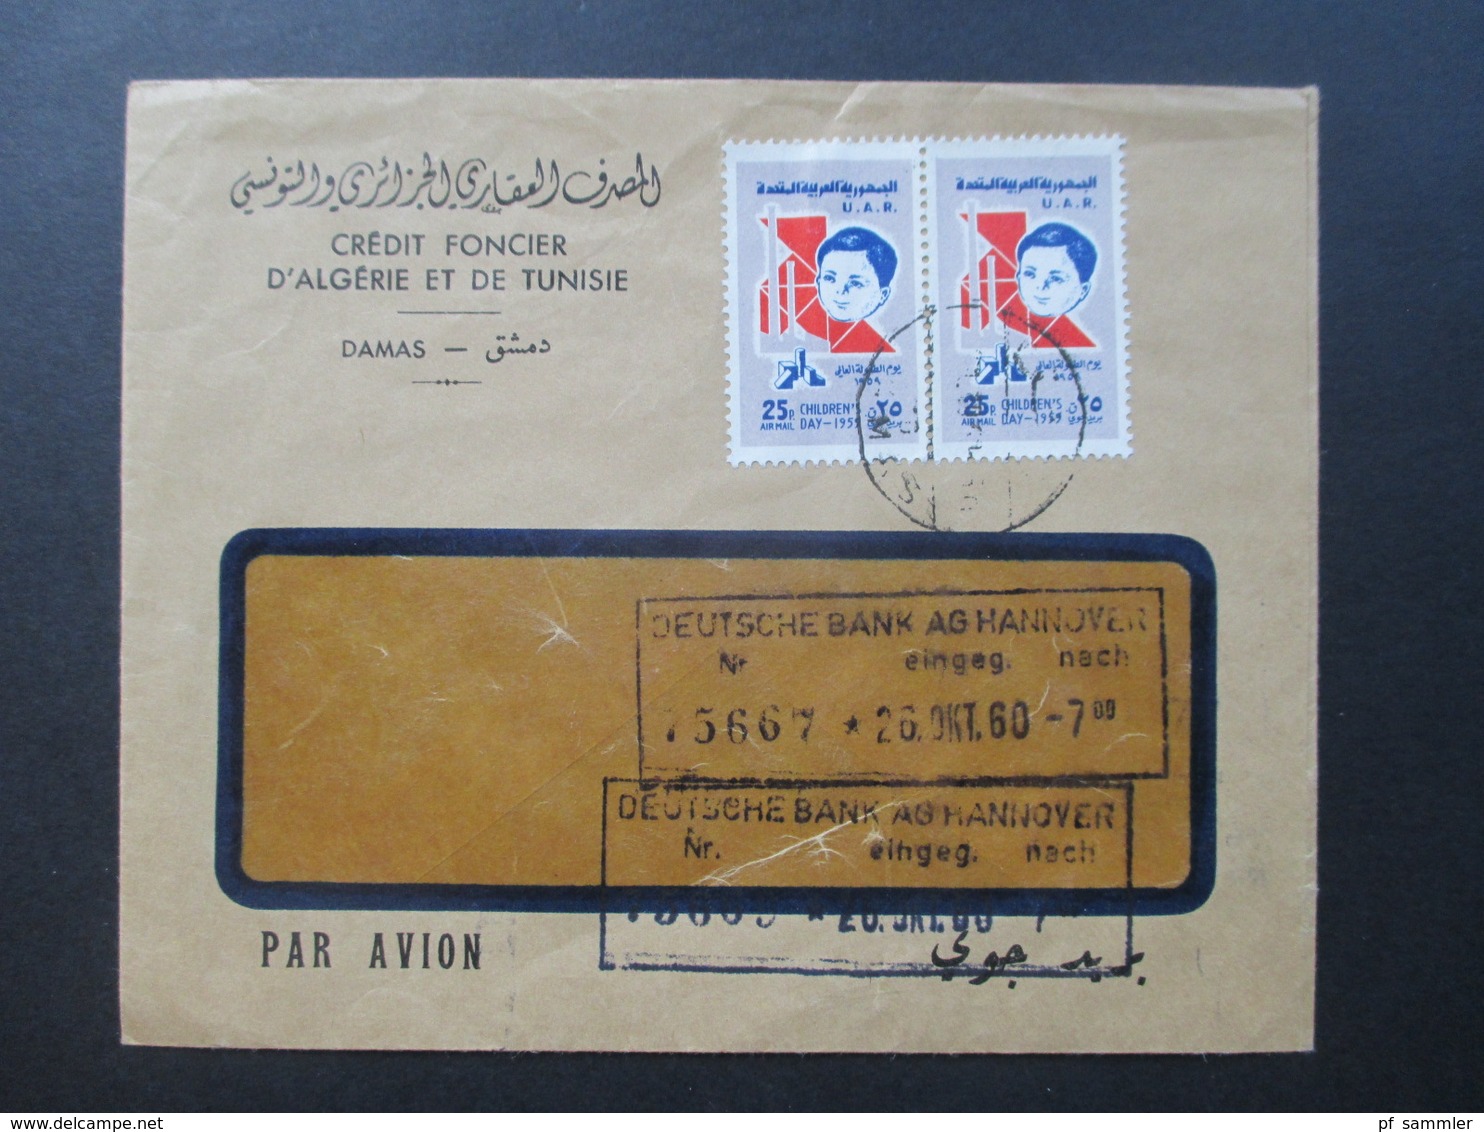 Syrien / UAR 1960 Air Mail / Luftpost Credit Foncier D'Algerie Et De Tunisie Damas. Marken Children's Day 1959 - Siria